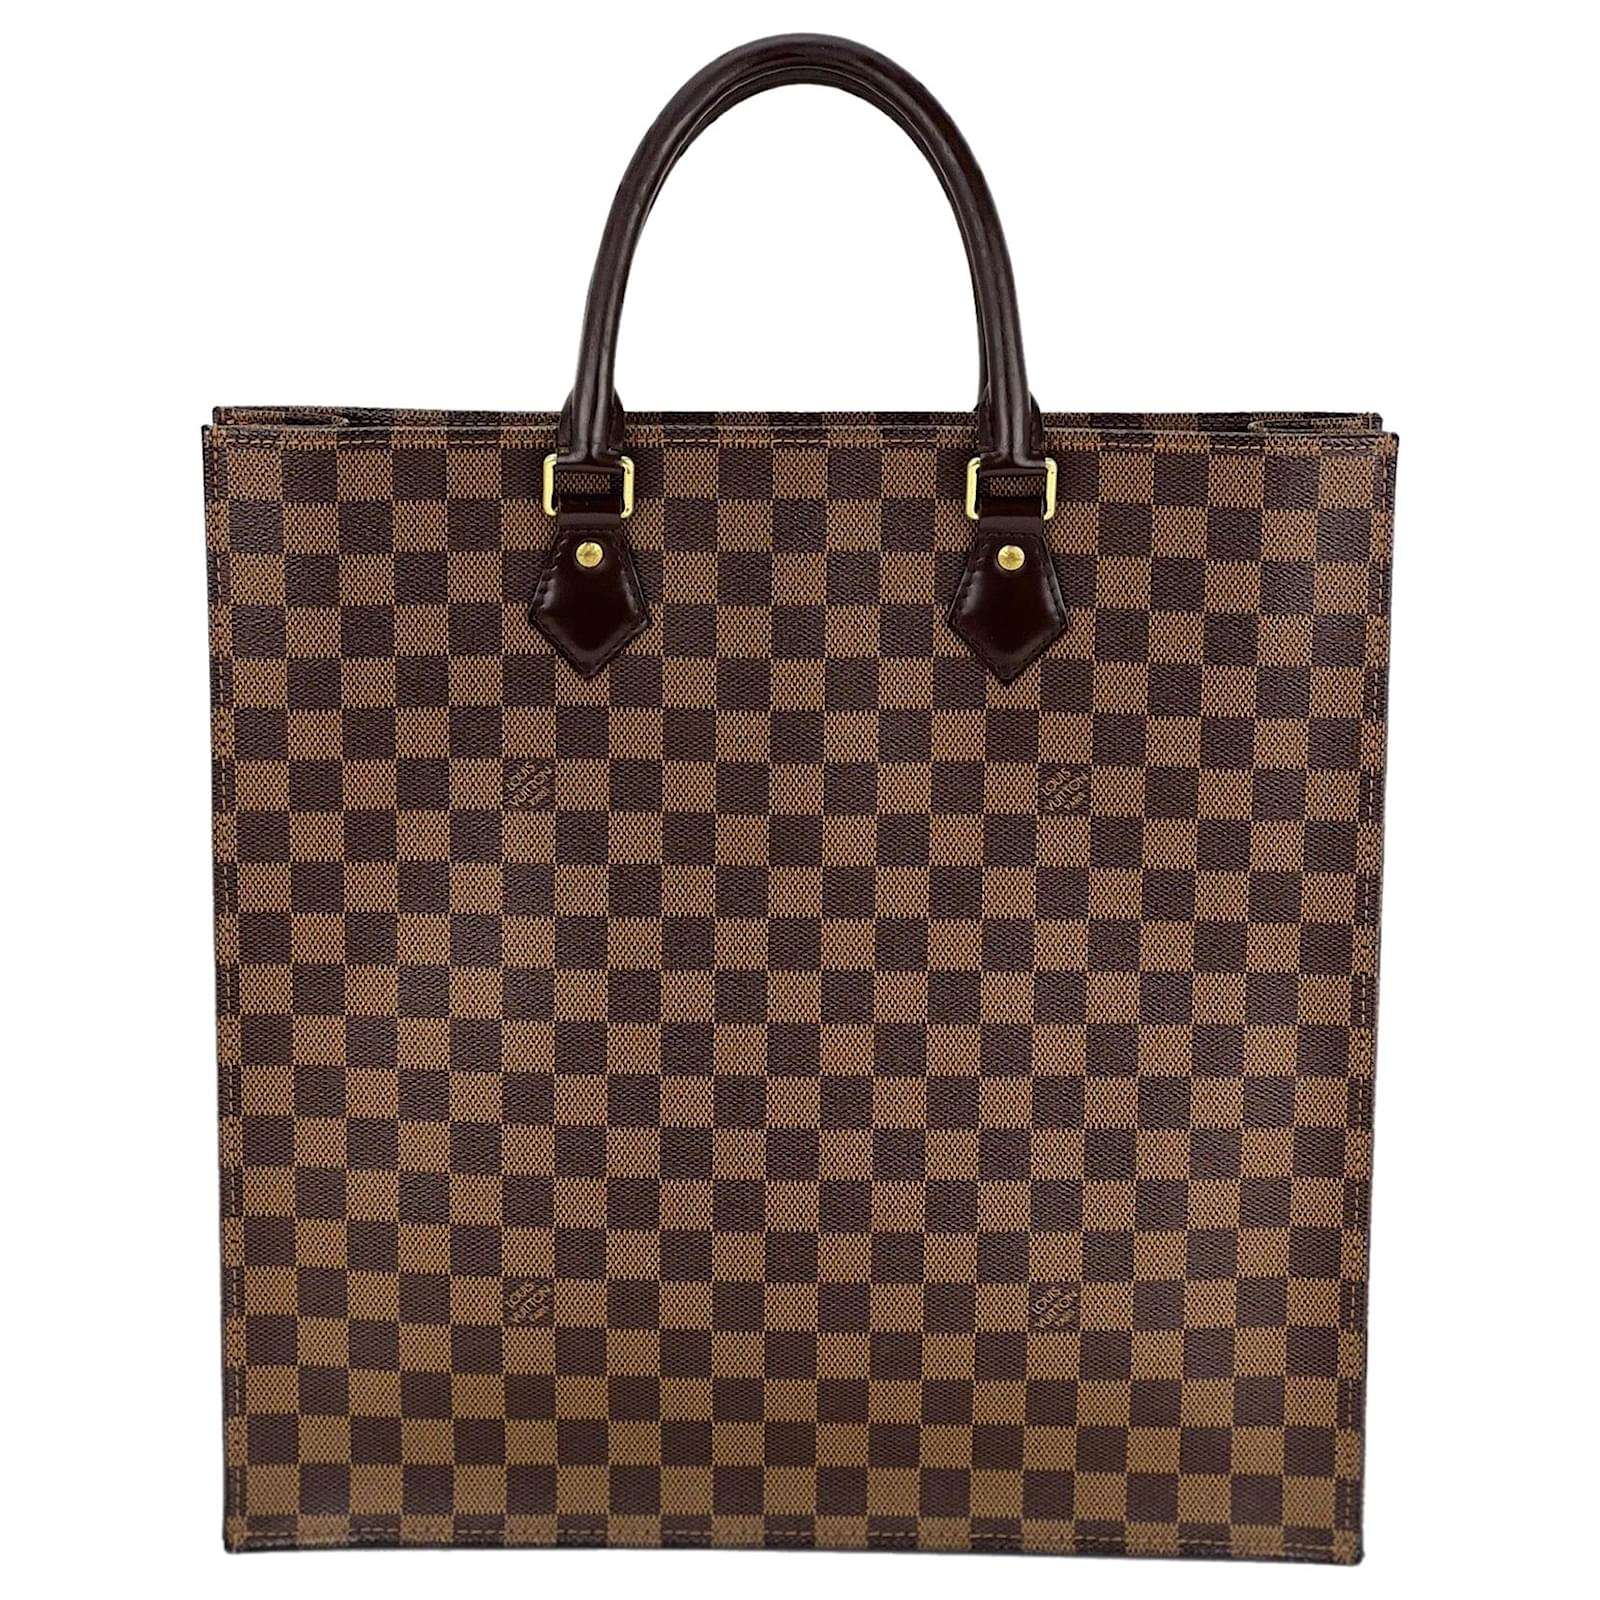 Louis Vuitton Damier Ebene Sac Plat - Brown Totes, Handbags